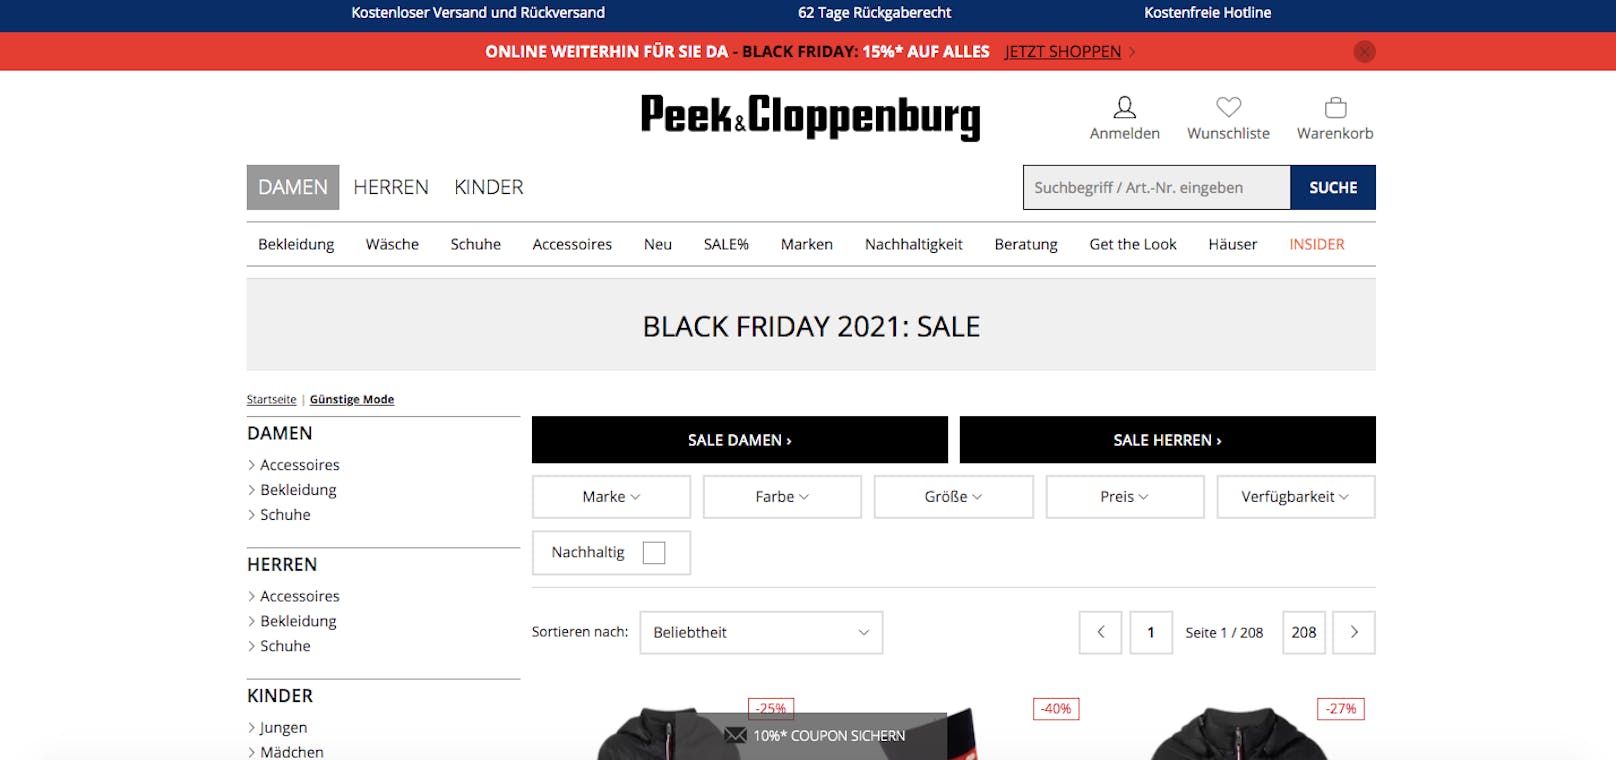 <strong>Peek &amp; Cloppenburg:</strong> Bei der deutschen Kette gibt es am Black Friday 15 Prozent auf alles.&nbsp;<em>(<a href="https://www.peek-cloppenburg.at/sale">Hier geht‘s zum Sale!</a>)</em>